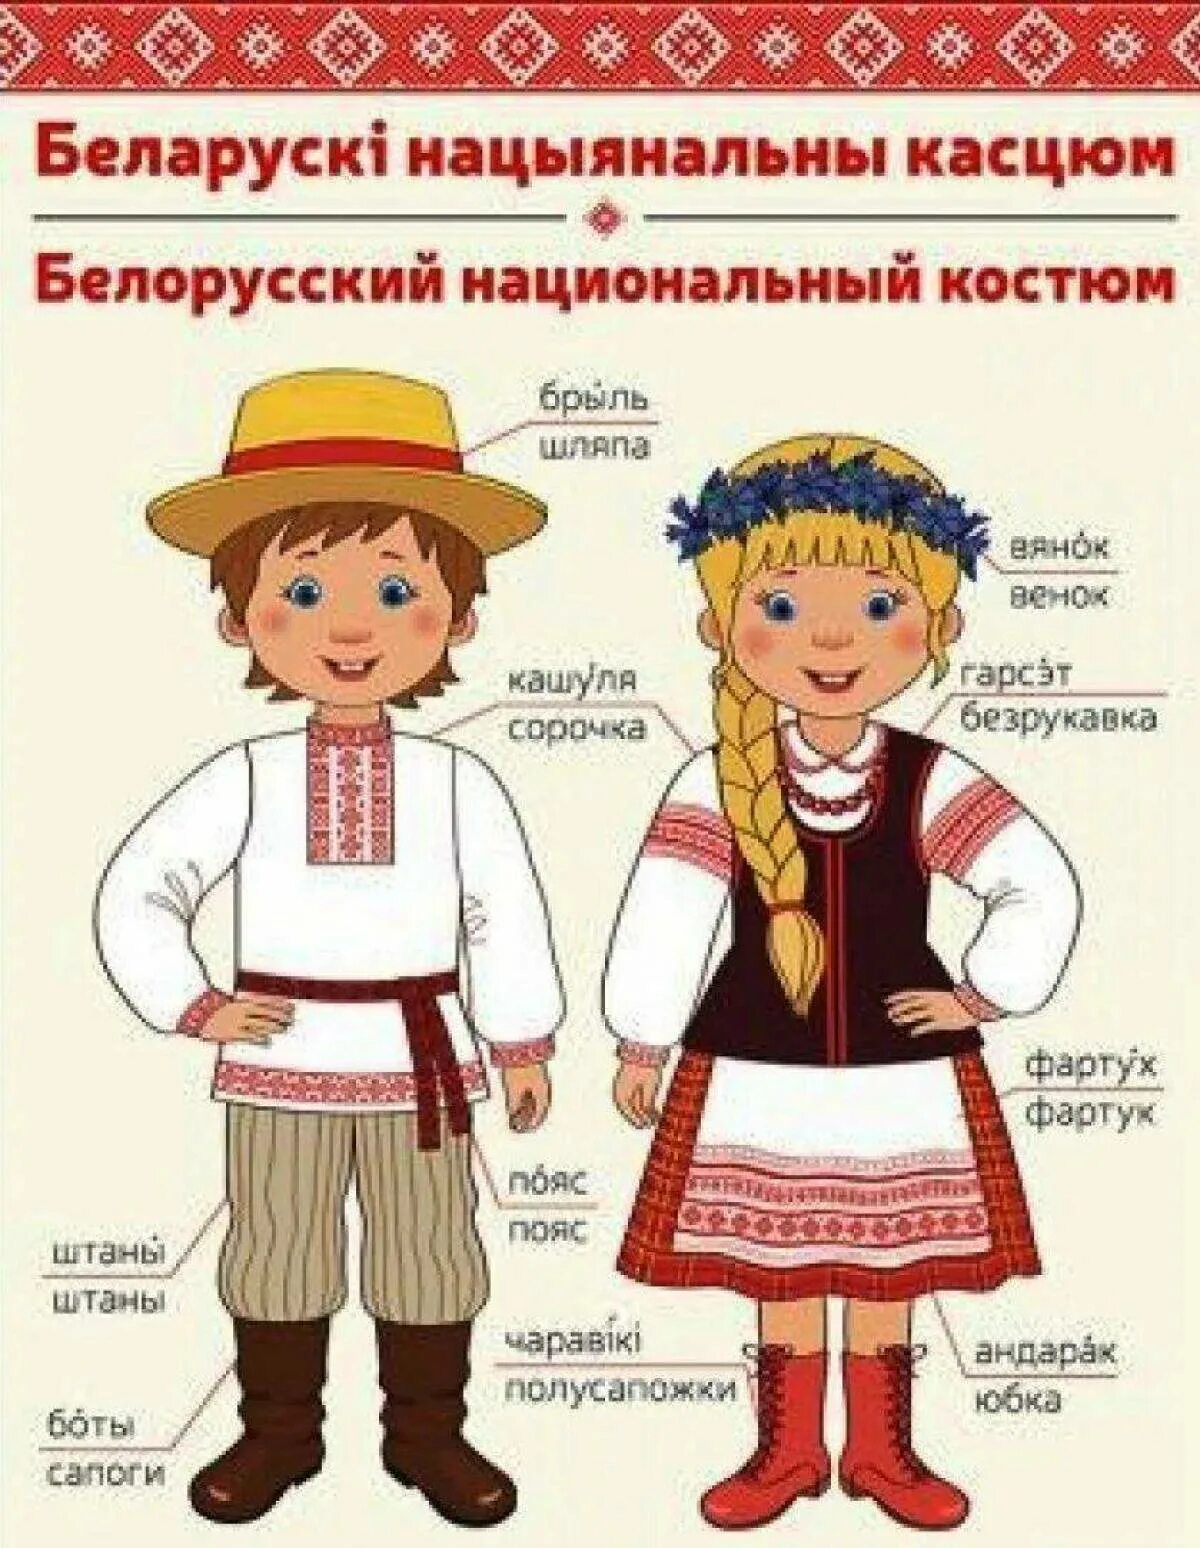 Белорусский национальный костюм. Национальный костюм белорусов. Белорусский костюм национальный для мальчика. Белорусский национальный костюм для детей.